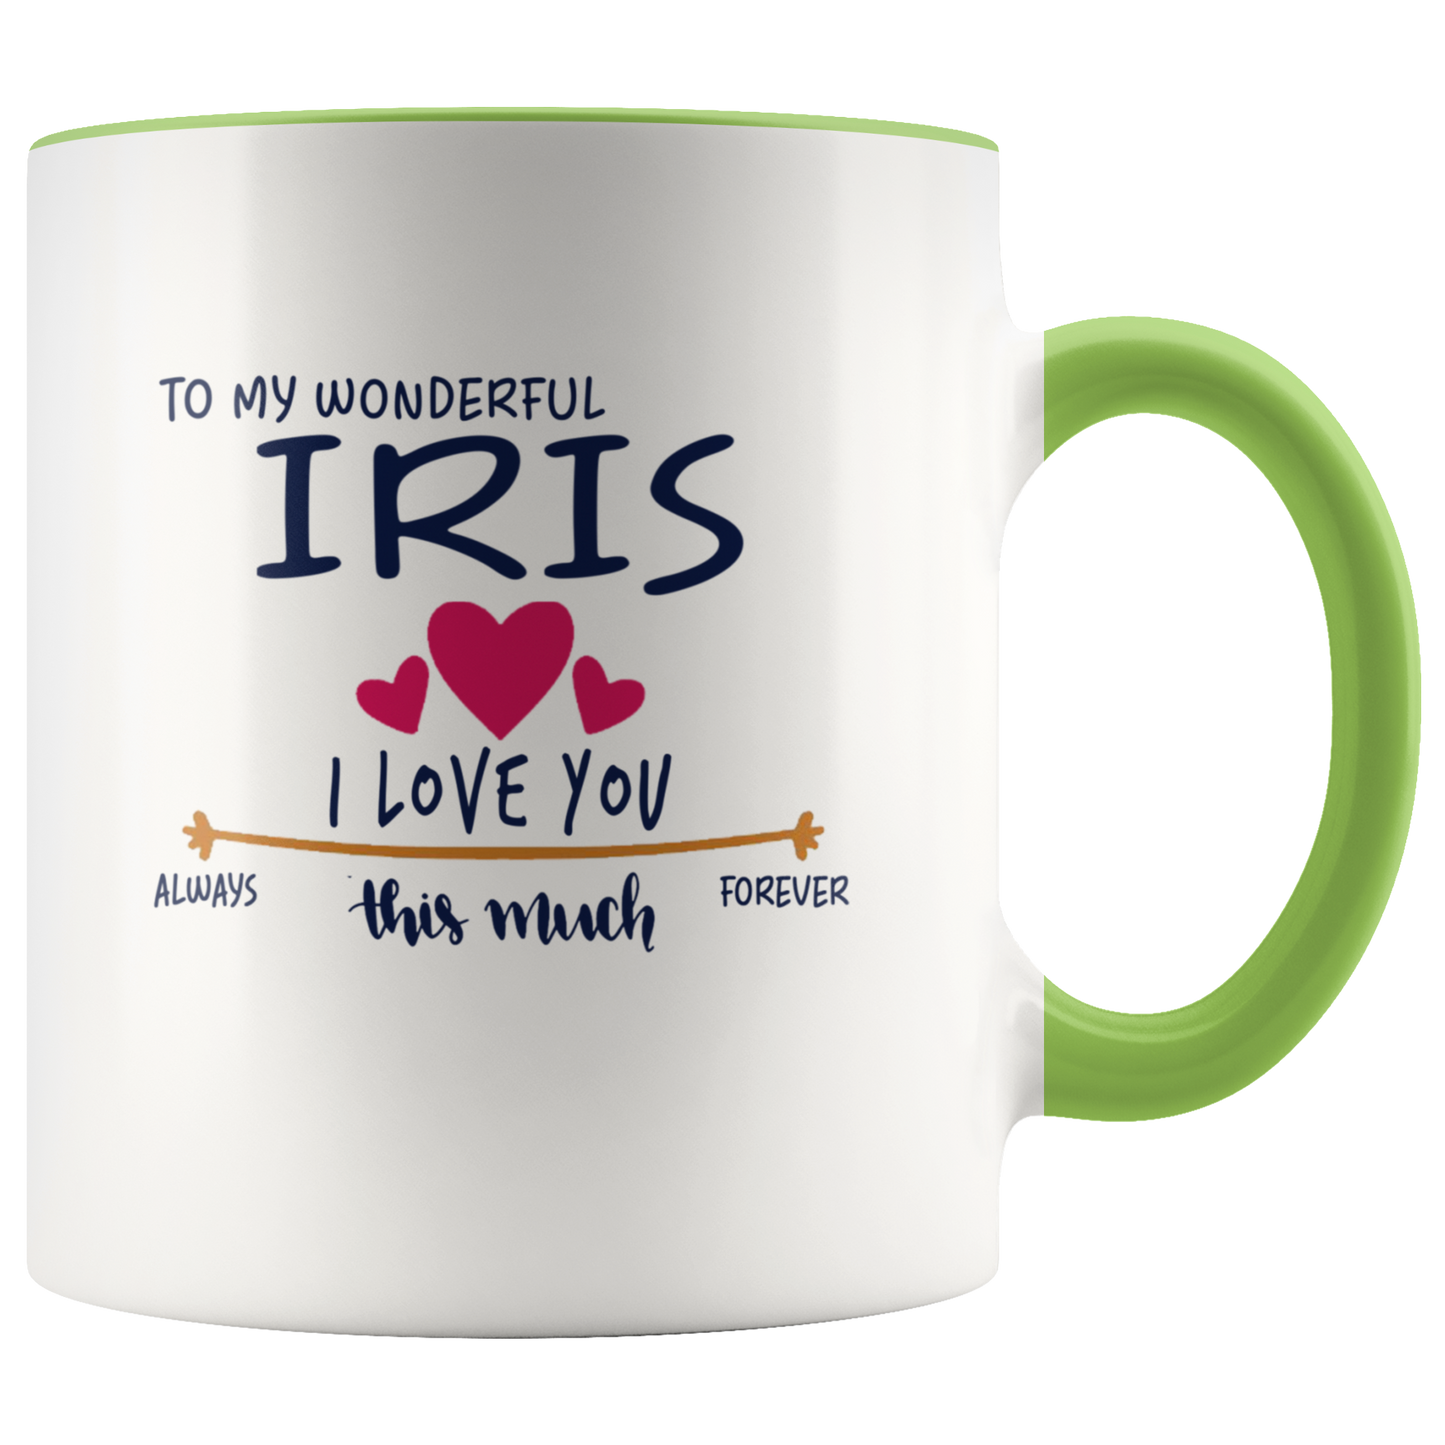 M-21259220-sp-22826 - Valentines Day Coffee Mug With Name Iris - To My Wonderful I